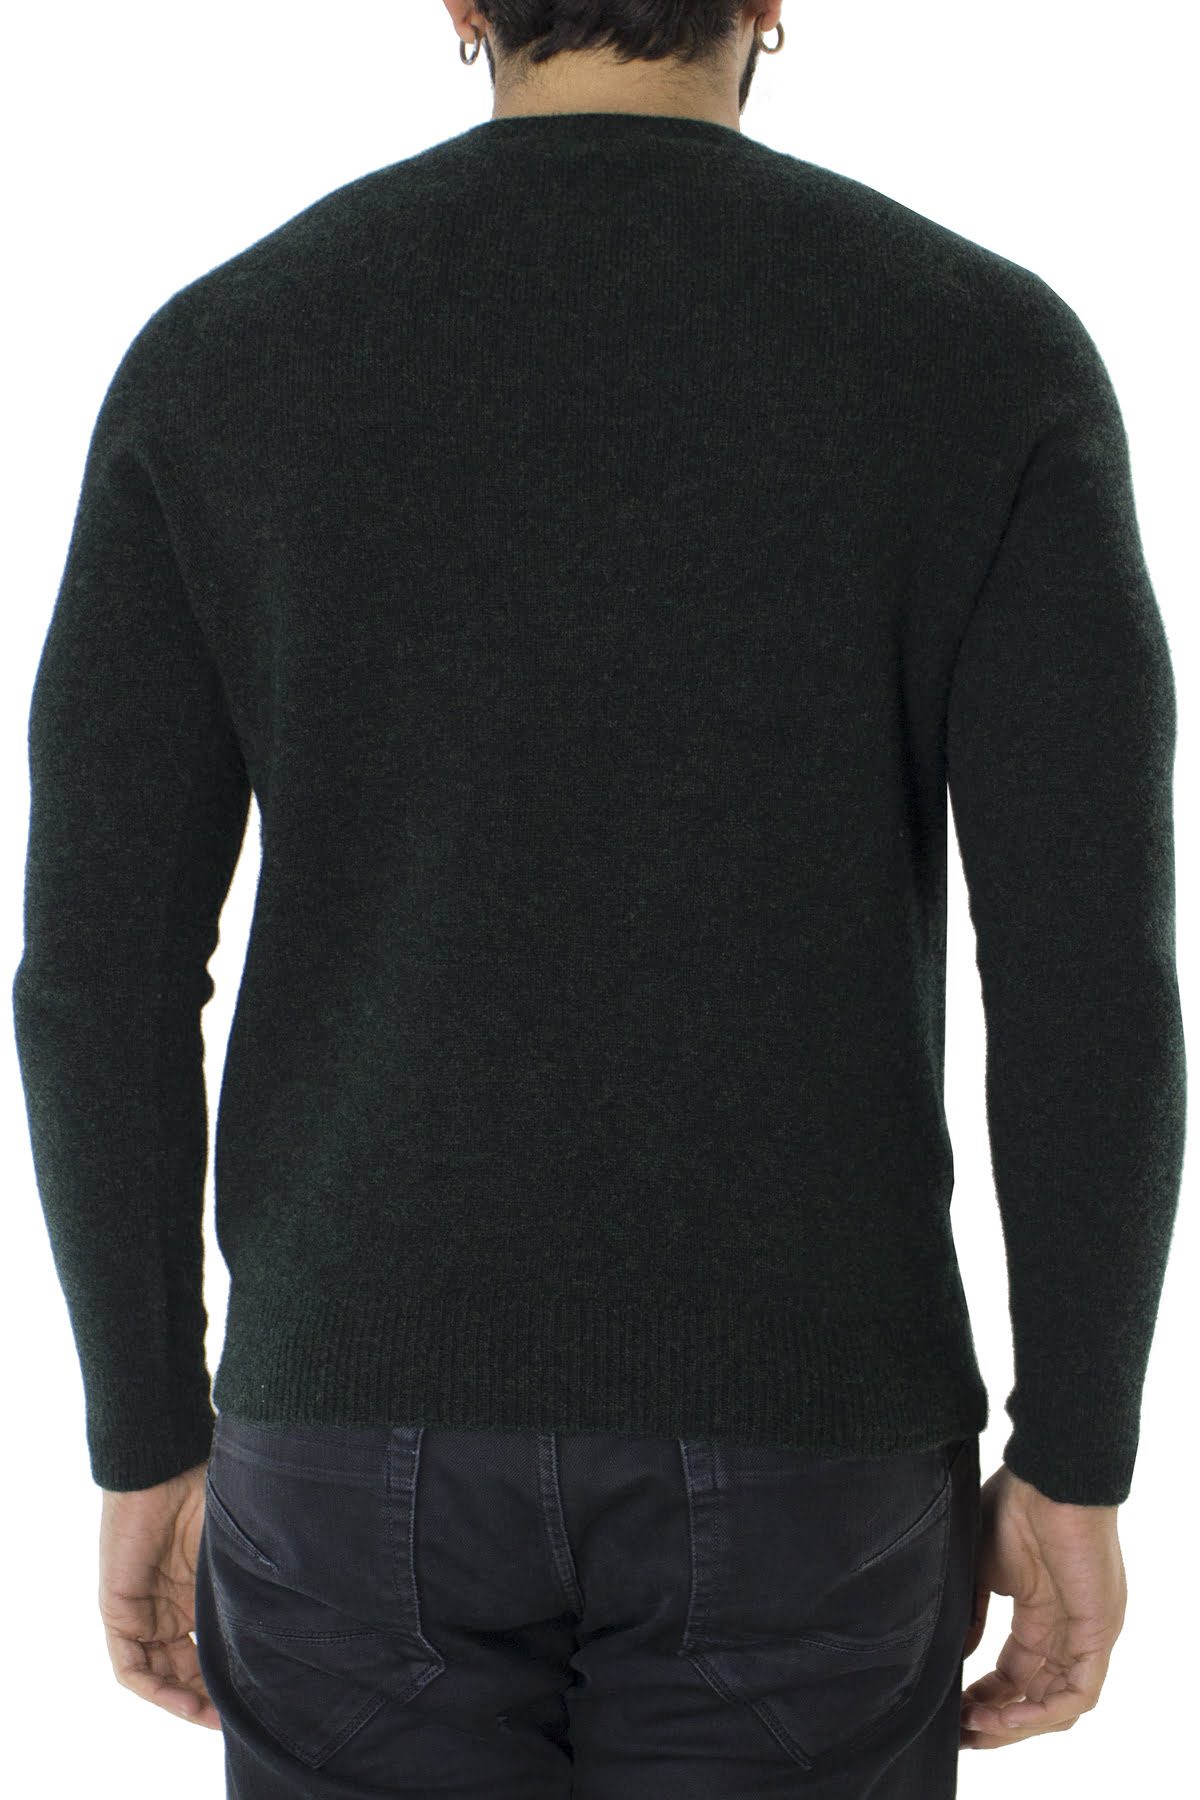 Maglione uomo Girocollo verde scuro effetto melange verde chiaro in lana 100% slim fit